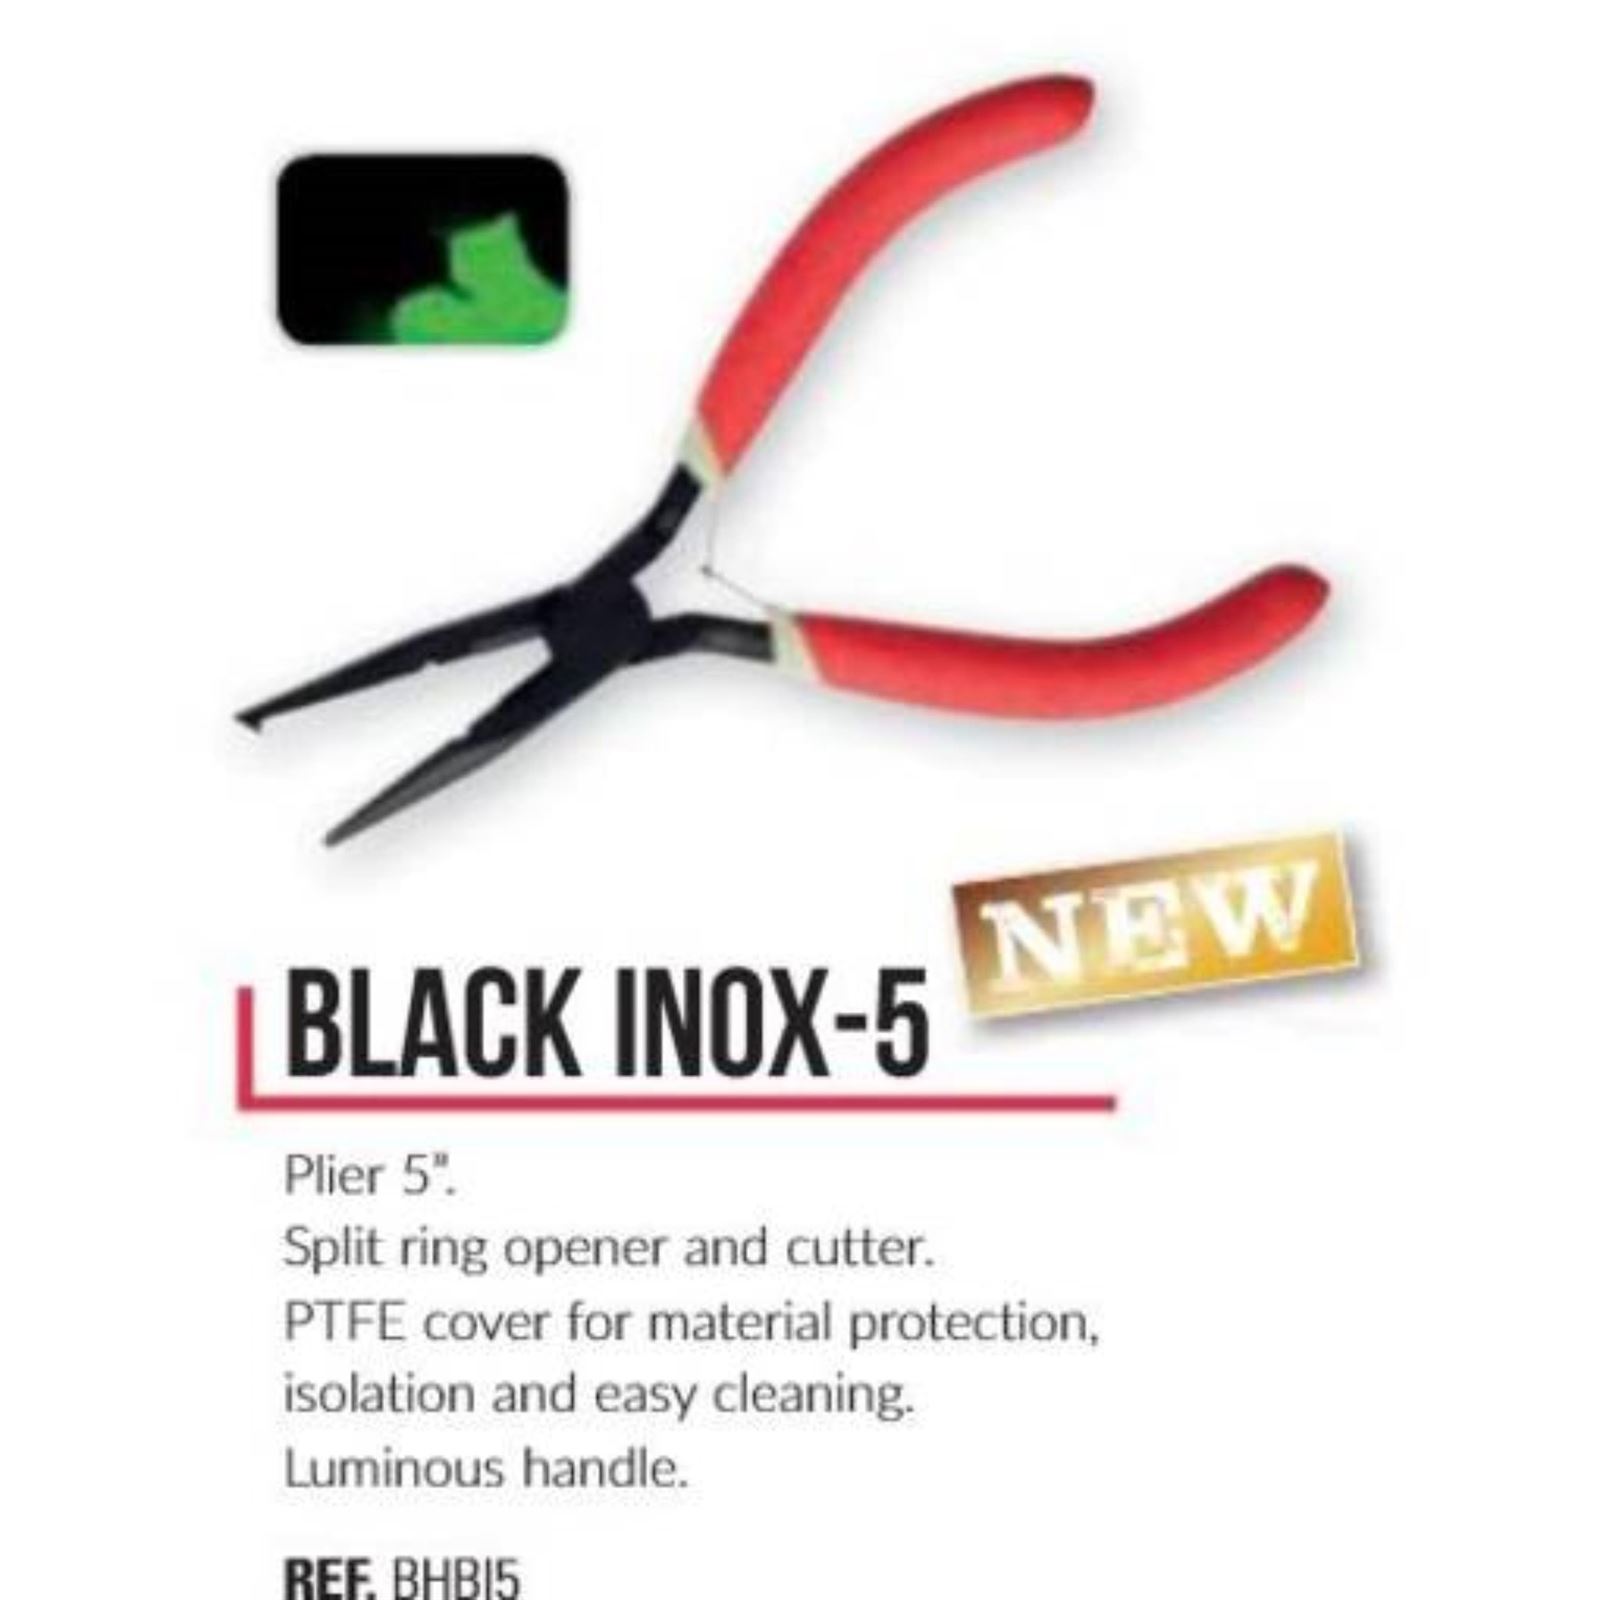 HART Alicates Black Inox-5 mango luminoso, abre anillas y corta hilos - Imagen 1